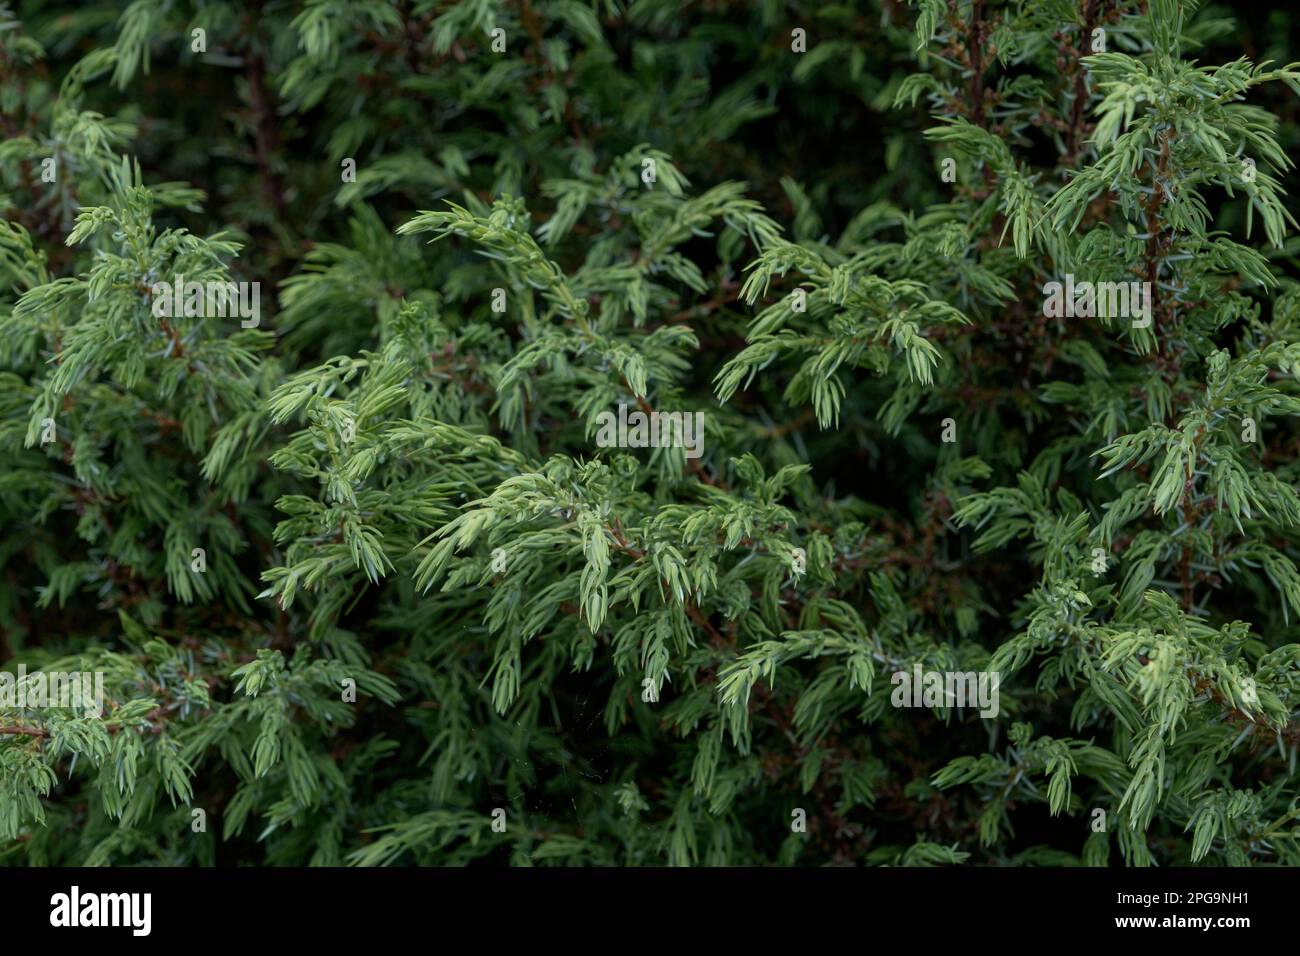 Sawara cypress (Chamaecyparis pisifera) green foliage Stock Photo